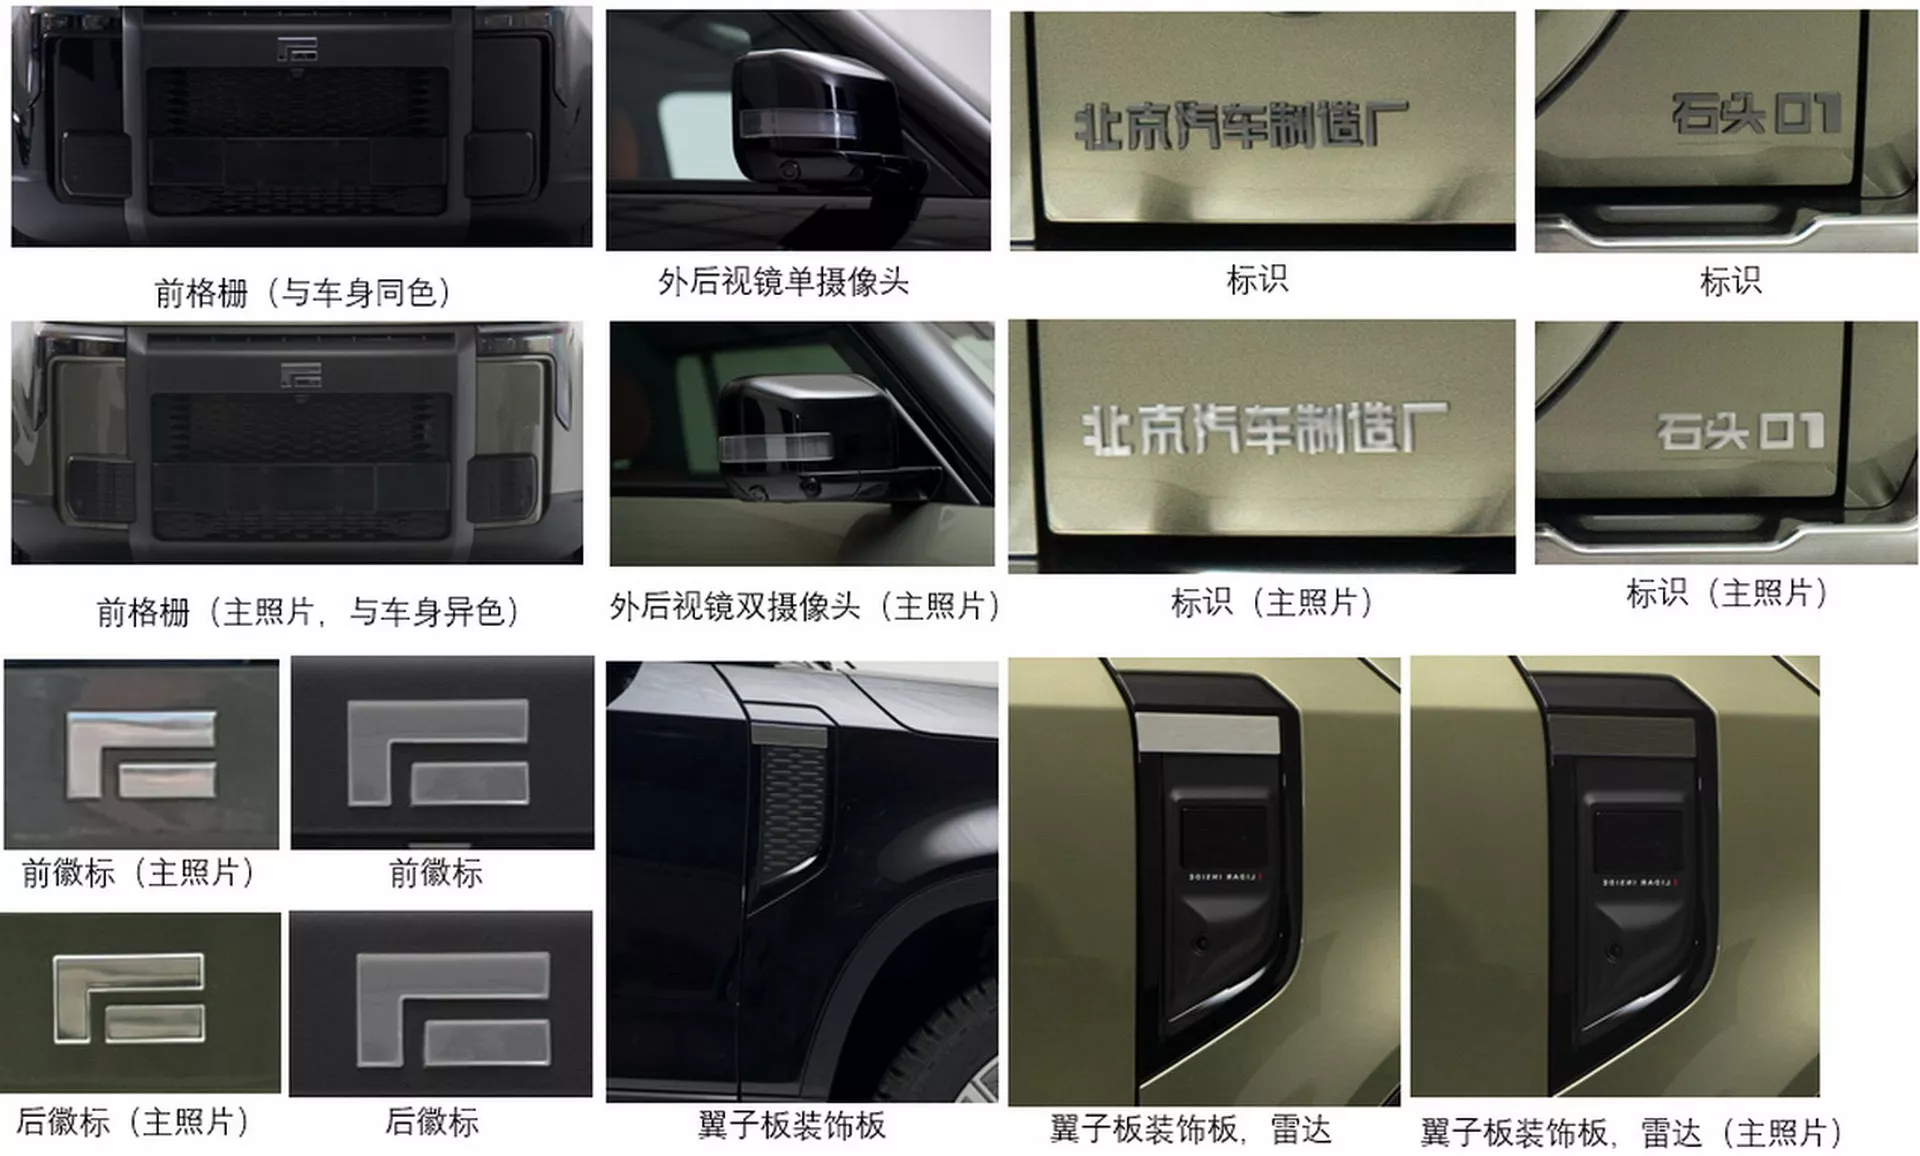 بايك الصينية تكشف عن SUV وعرة جديدة كلياً بتصميم مستوحى من ديفندر 4